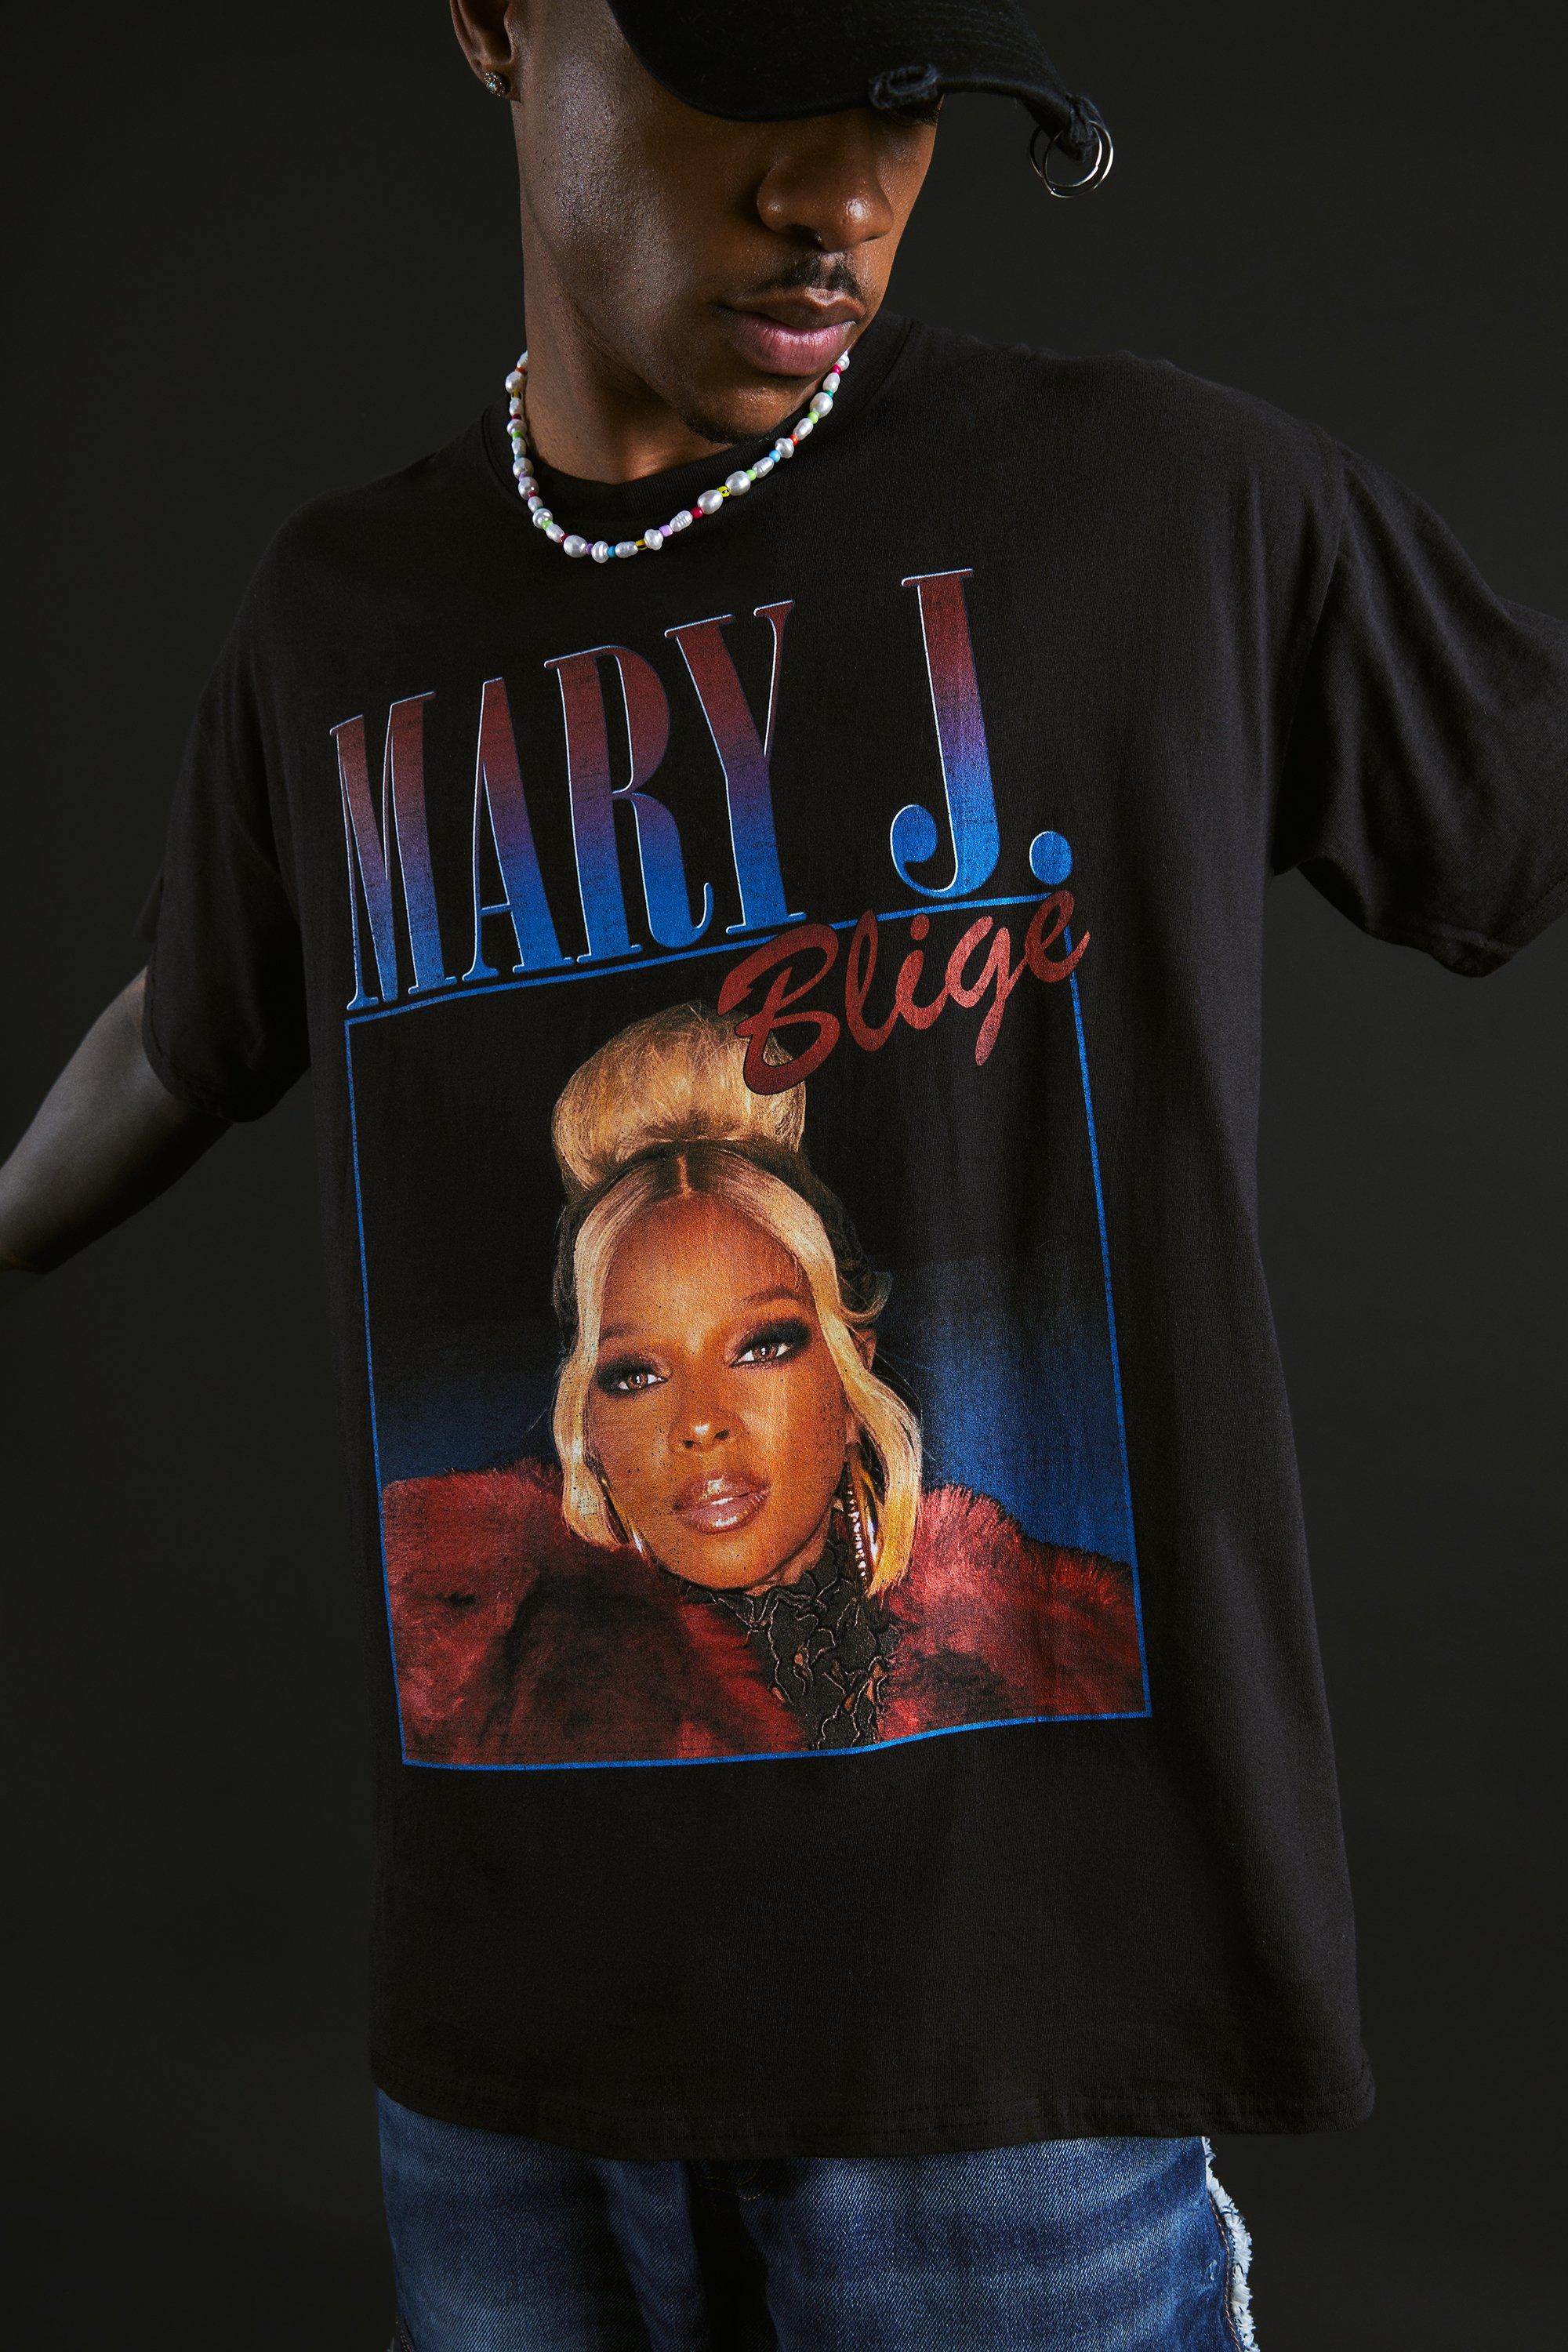 Men's Oversized Mary J Blige License T-shirt